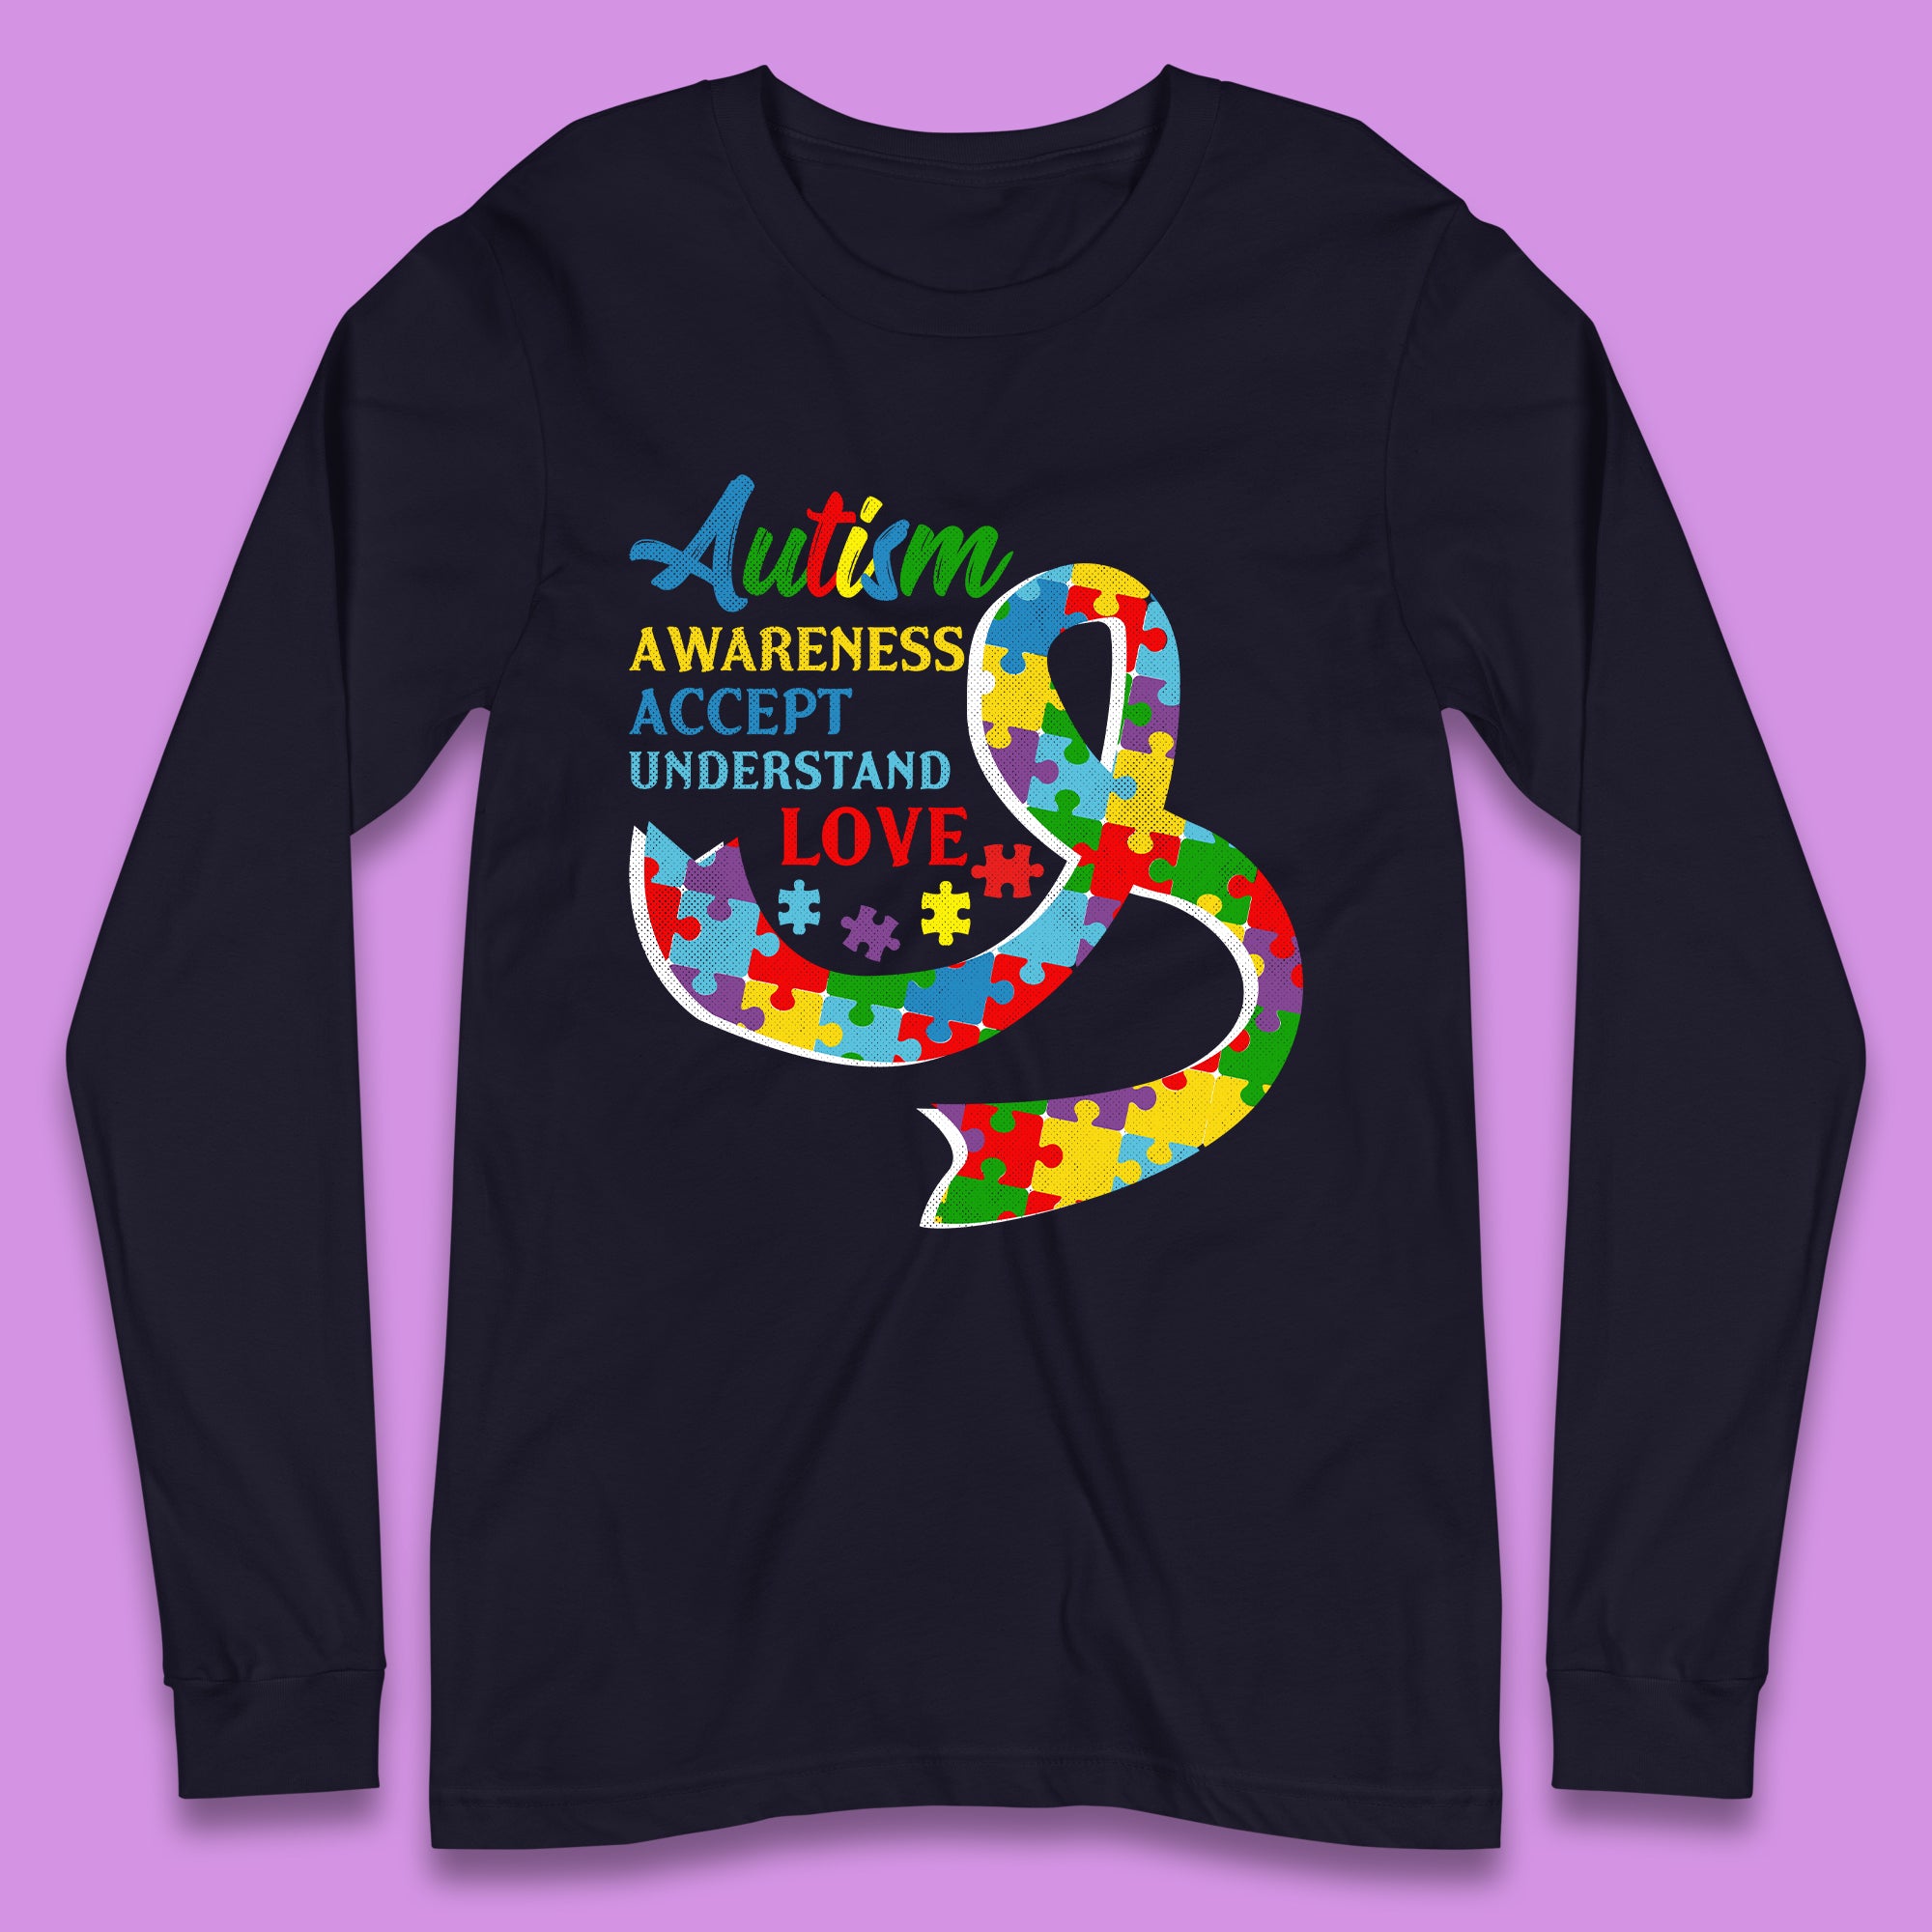 Autism Awareness Long Sleeve T-Shirt